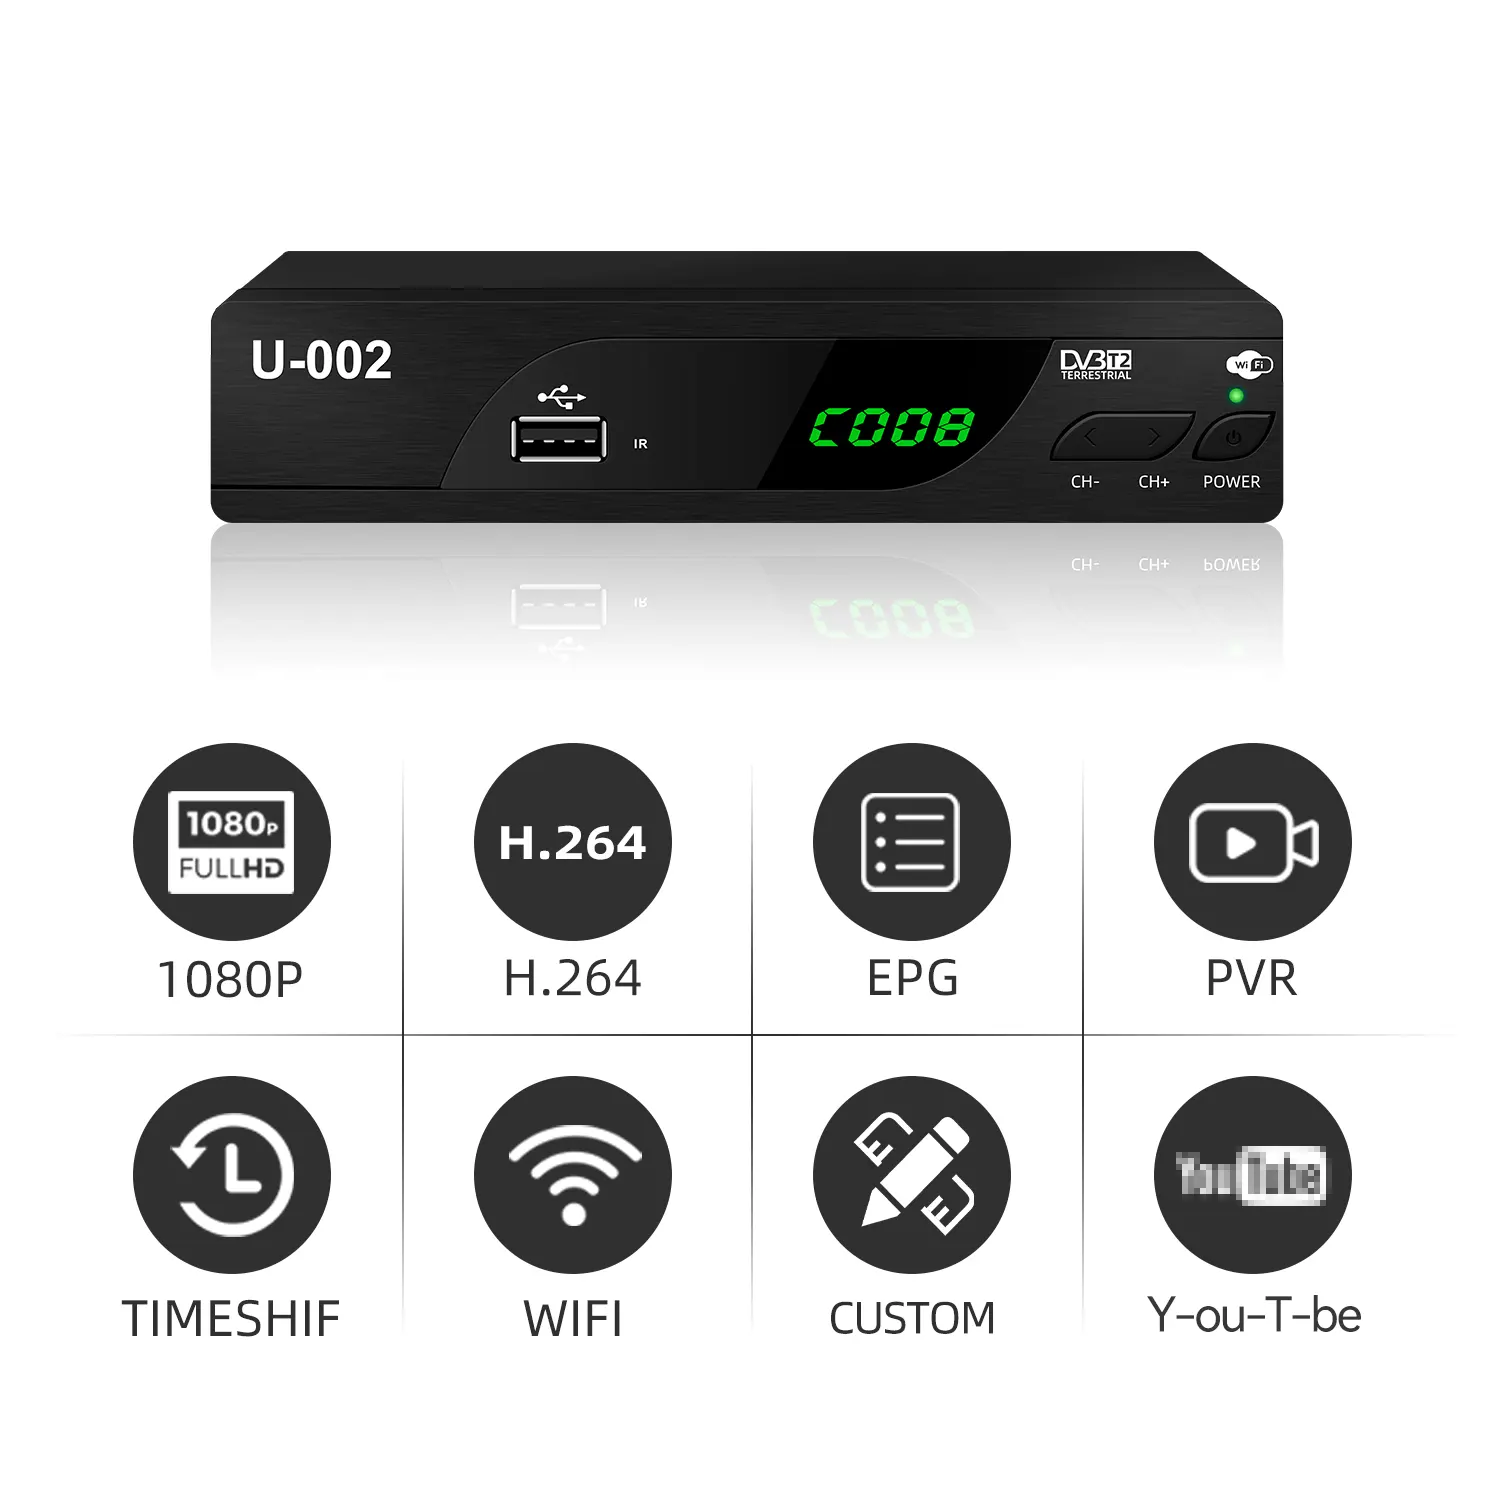 جهاز إرسال ذكي DVB-T2 الأفضل مبيعًا جهاز إرسال Mpeg4 FULL HD جهاز ضبط و فك الترميز جهاز مؤالفة رقمي جهاز استقبال هوائي للسيارة جهاز DVB T2